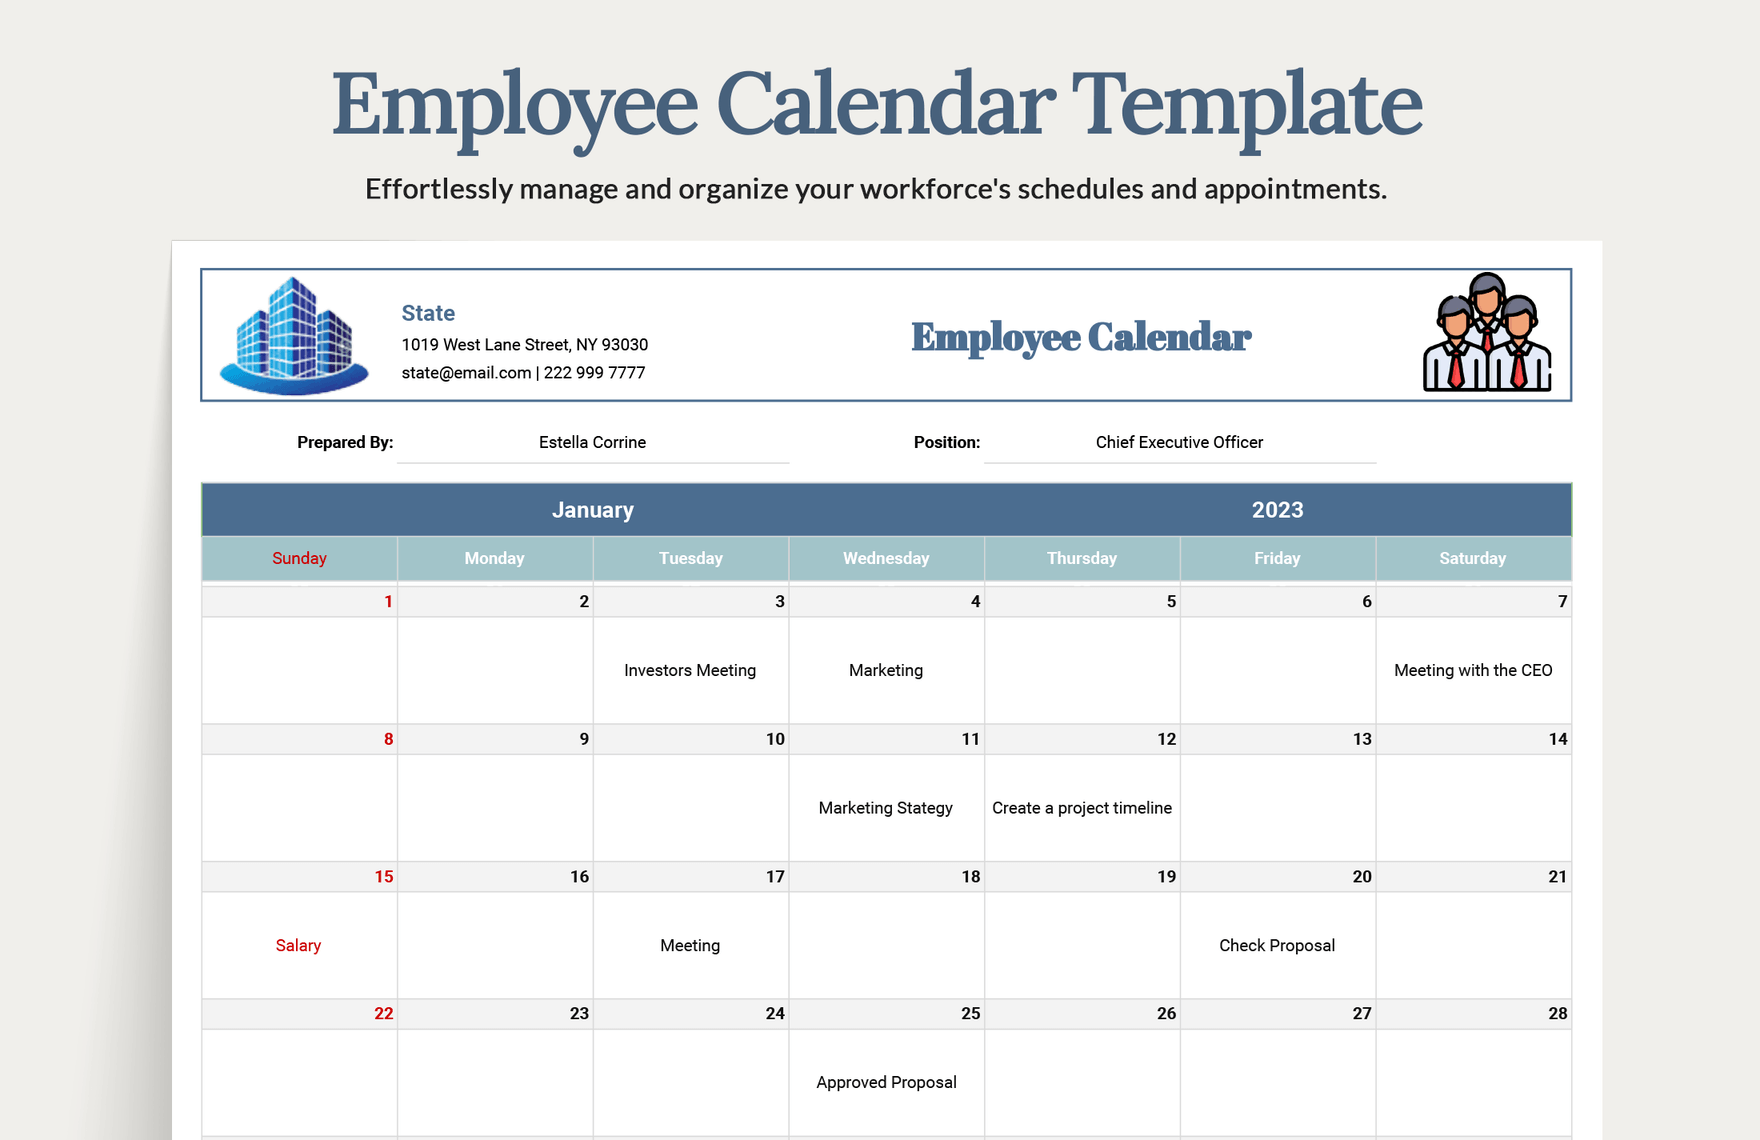 Employee Calendar Template Download in Word, Google Docs, Excel